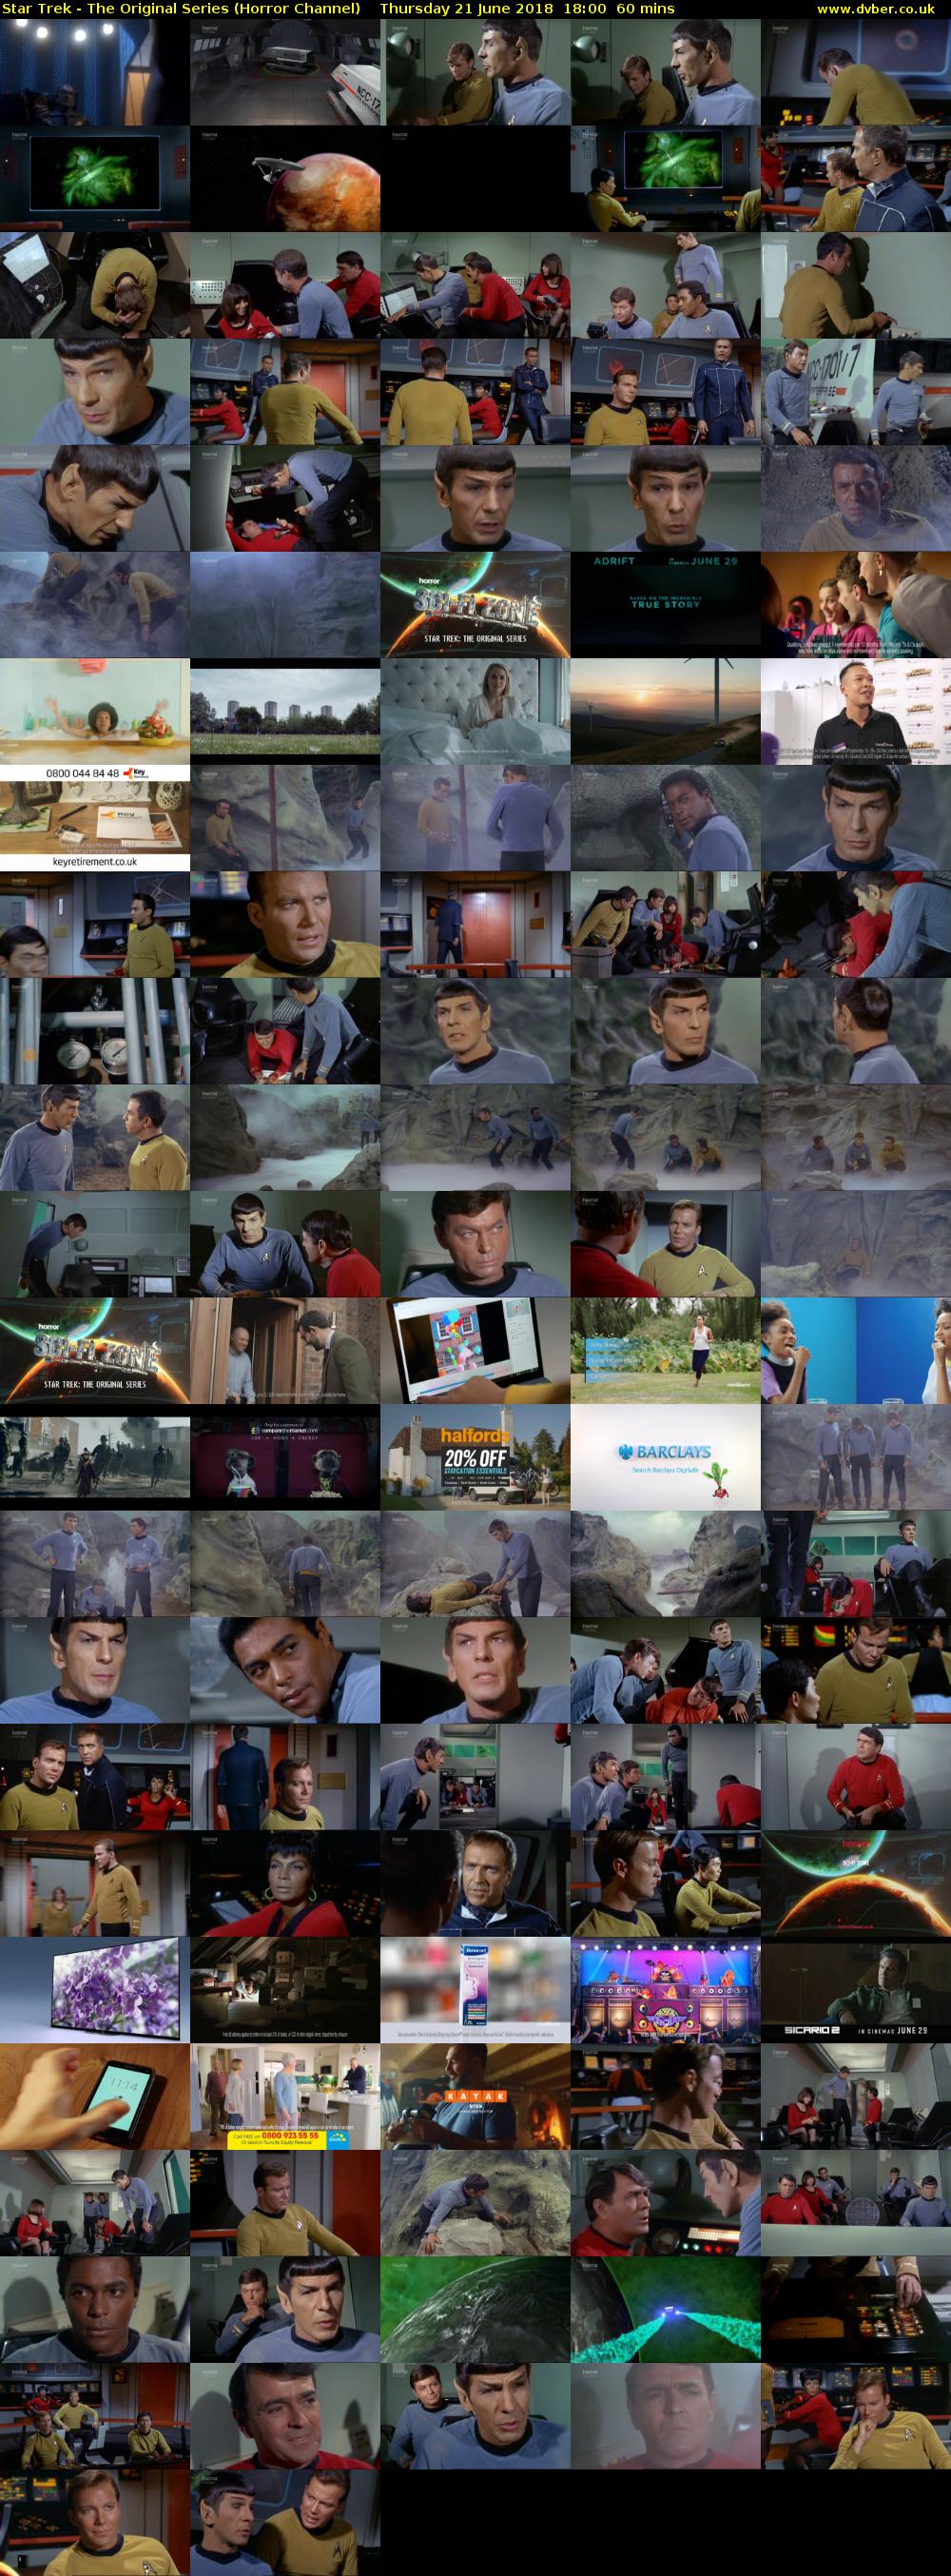 Star Trek - The Original Series (Horror Channel) Thursday 21 June 2018 18:00 - 19:00